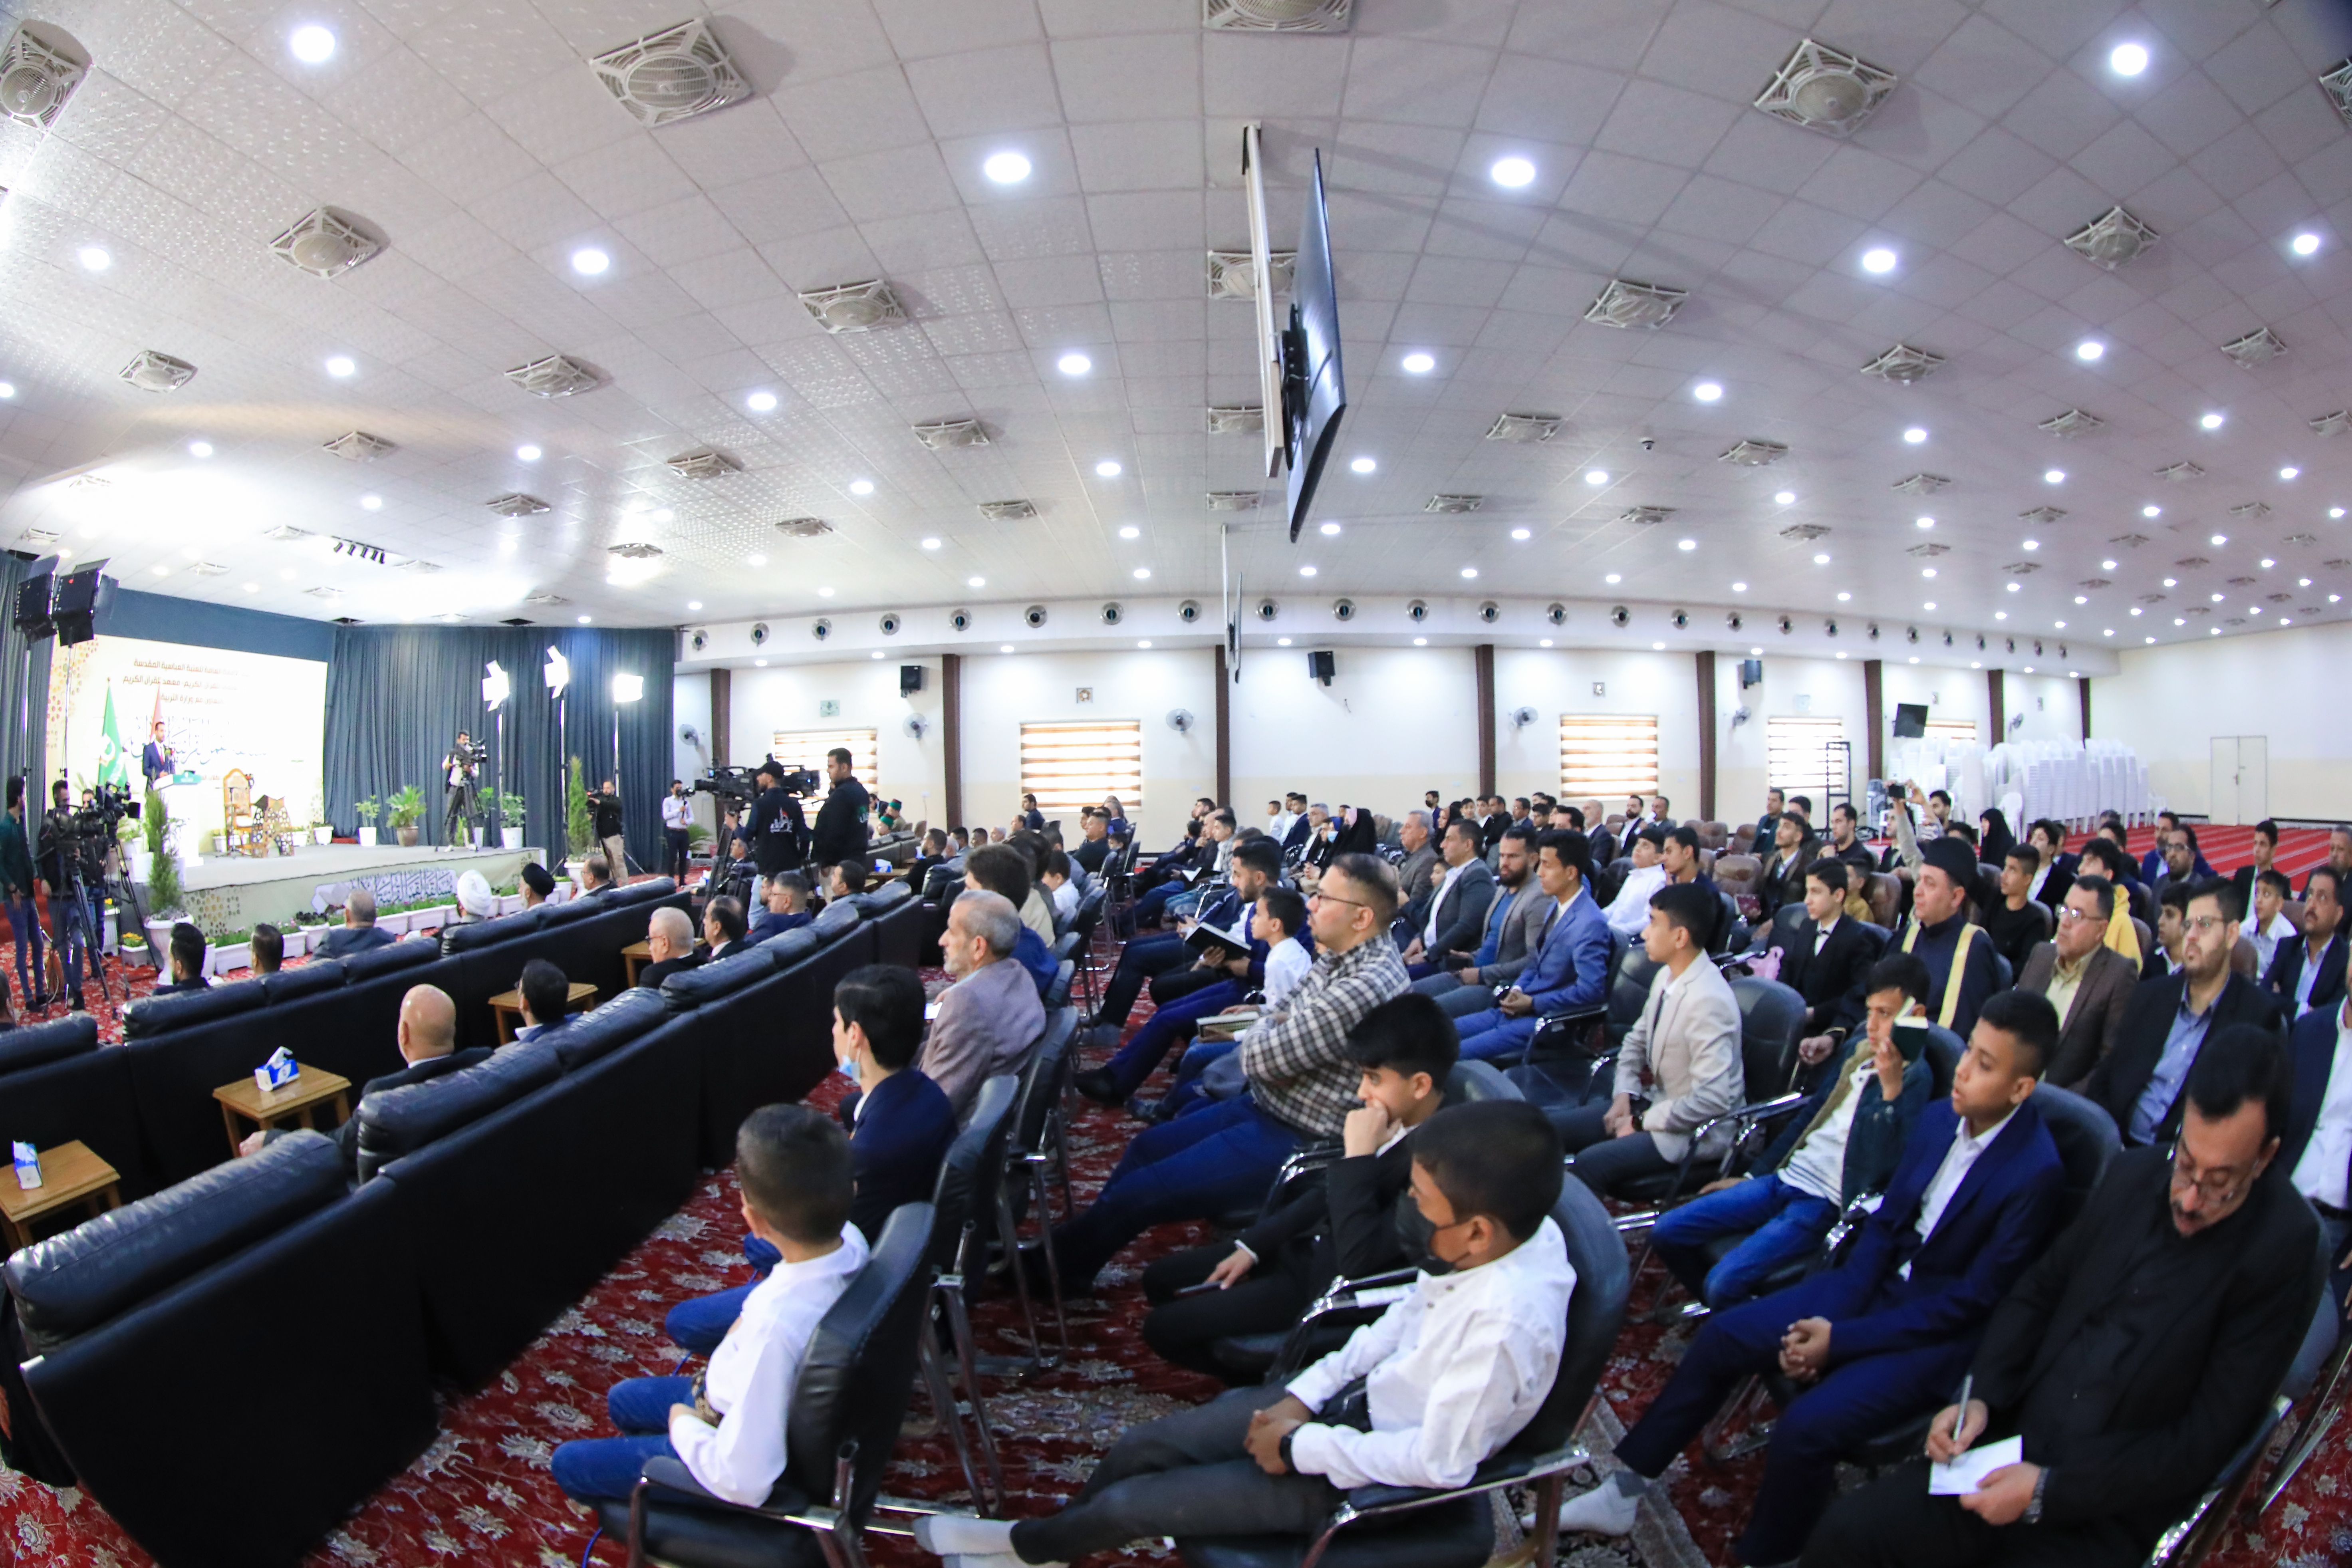 بمشاركة 14 محافظة انطلاق فعاليات مسابقة القمر القرآنية الوطنية الأولى الخاصة بطلبة المدارس العراقية